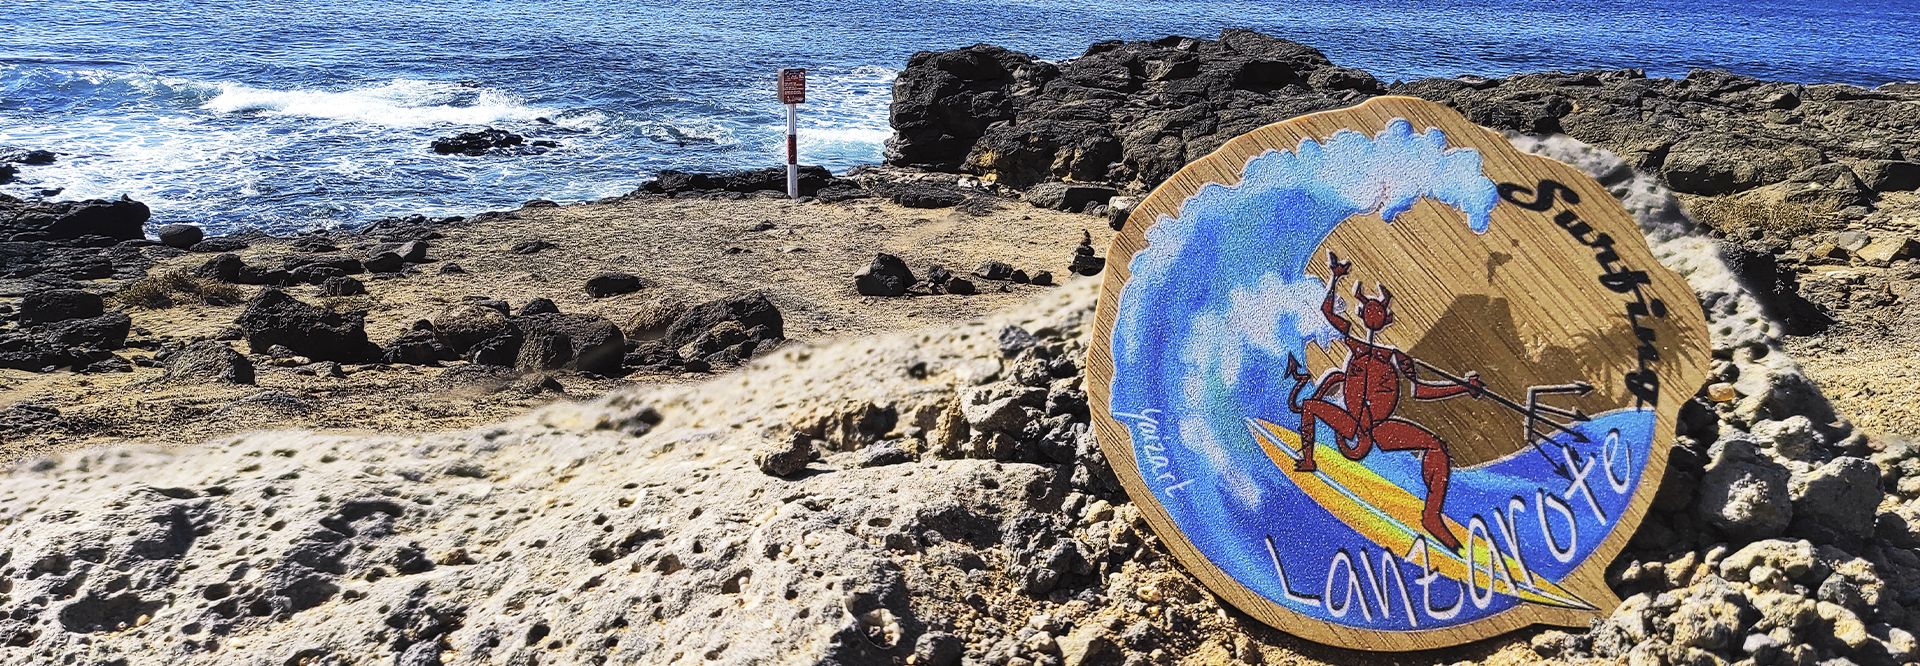 Surfeando el sur de Lanzarote. Guía de turismo y planazos.